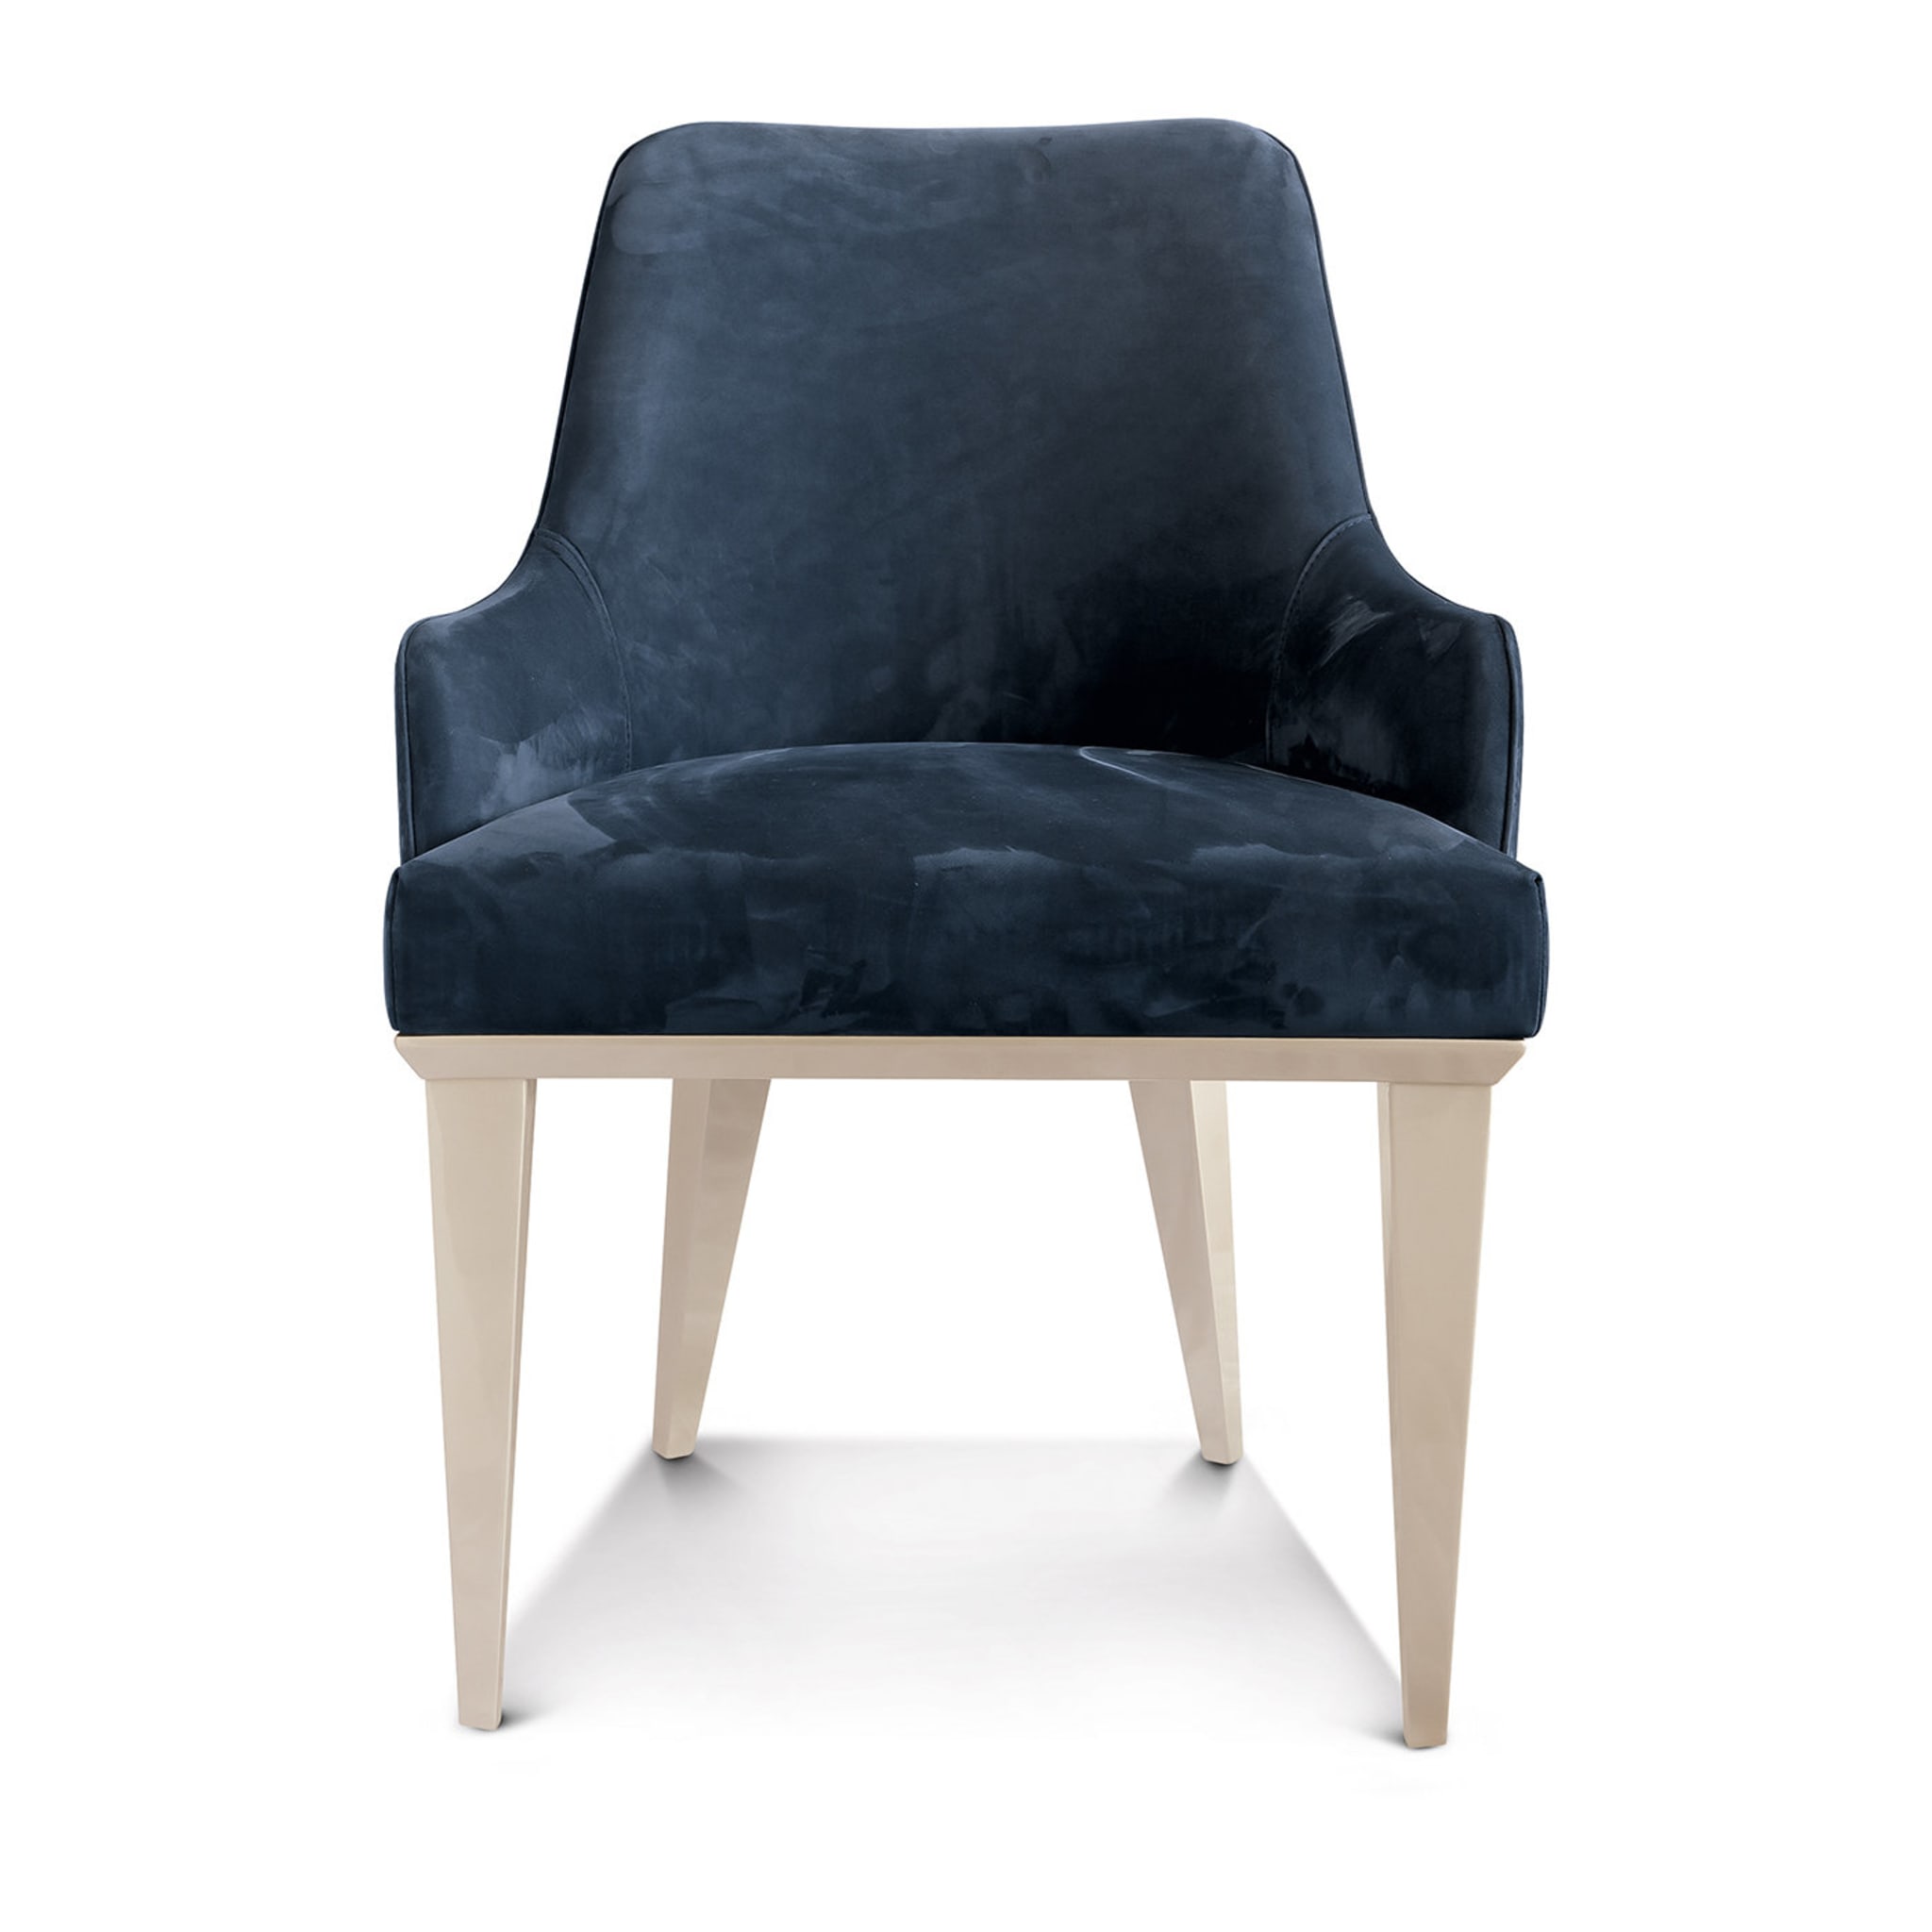 Blue Hanami Urban Chic Chair - Alternative view 1